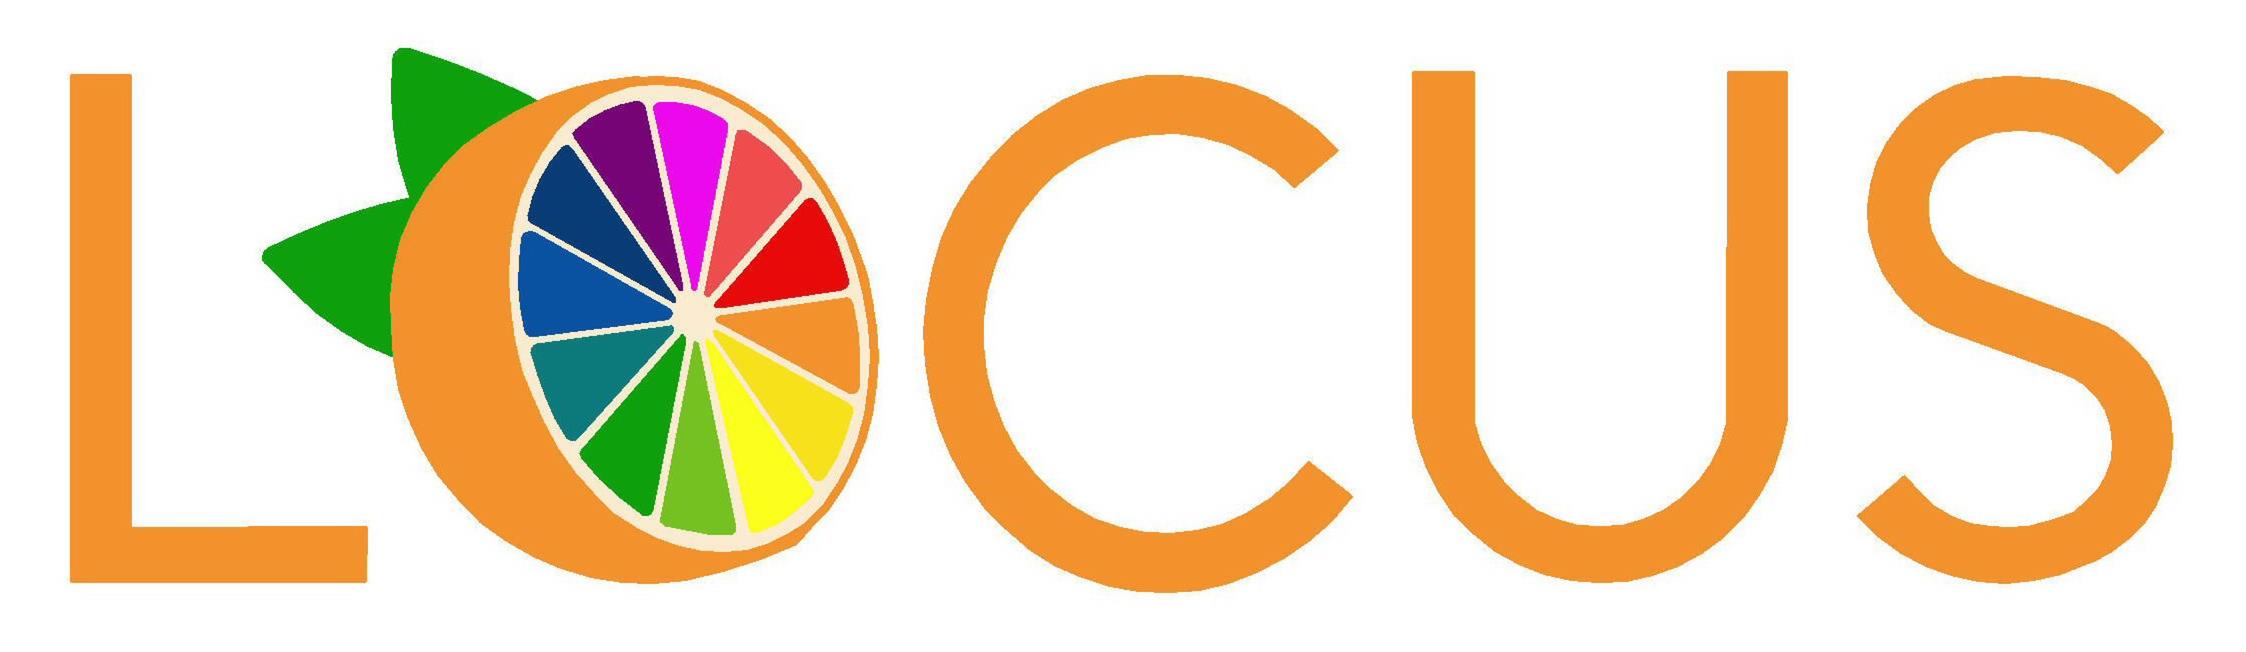 Trademark Logo LOCUS